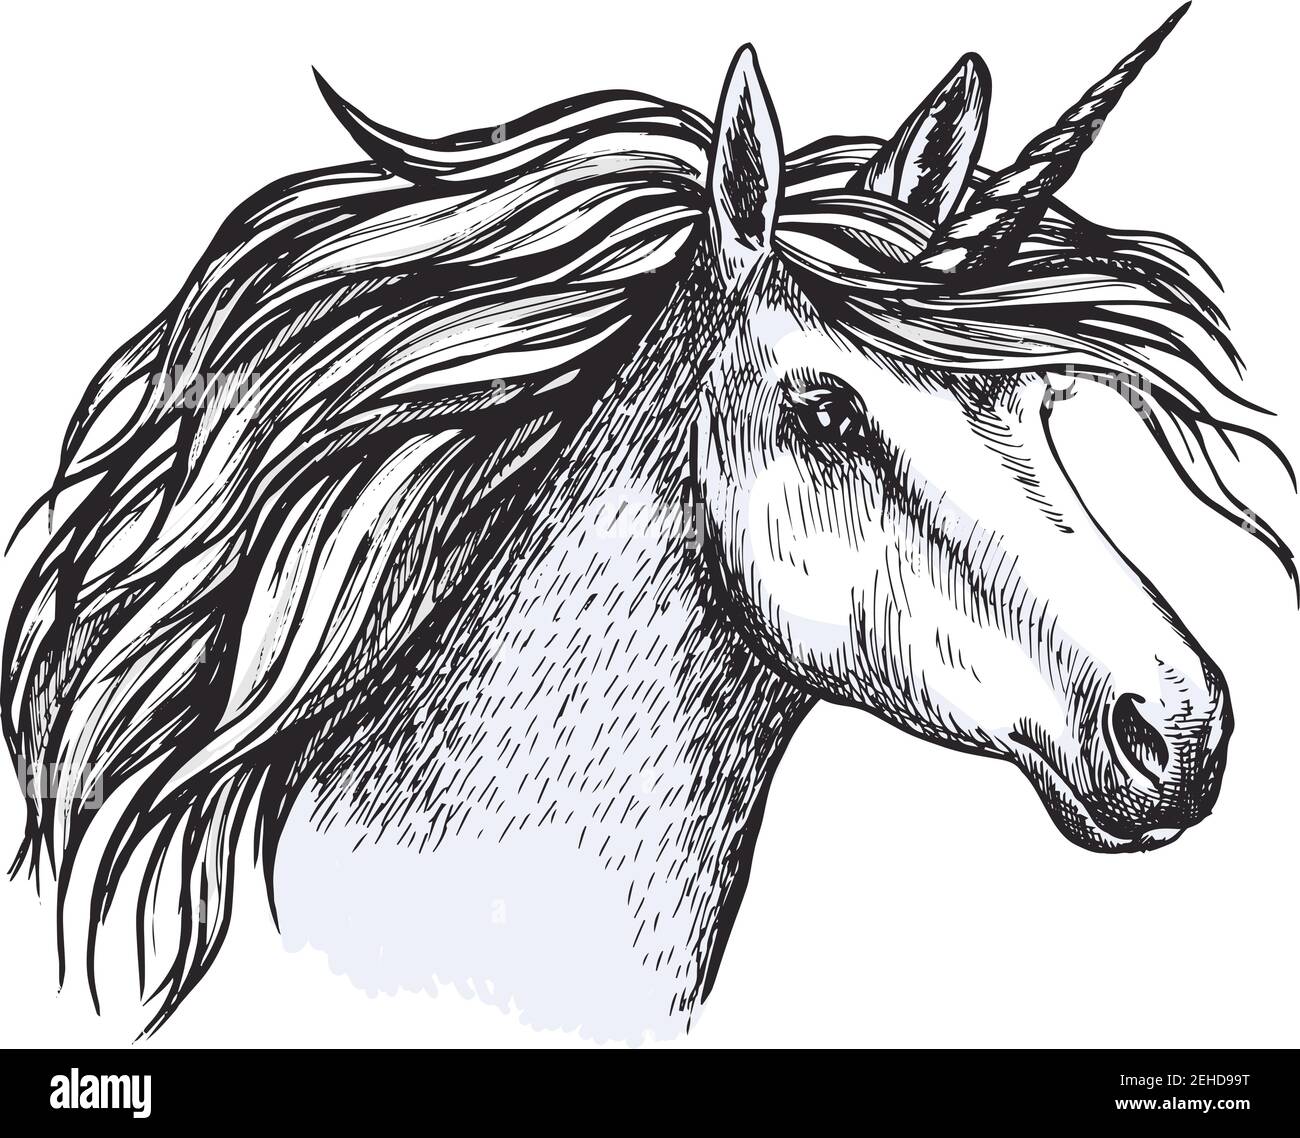 Unicorno testa schizzo di cavallo magico con corno. Animale da favola o mitico con pelliccia grigia e creme ricci per tatuaggio, stemma araldico medievale o t-shirt Illustrazione Vettoriale